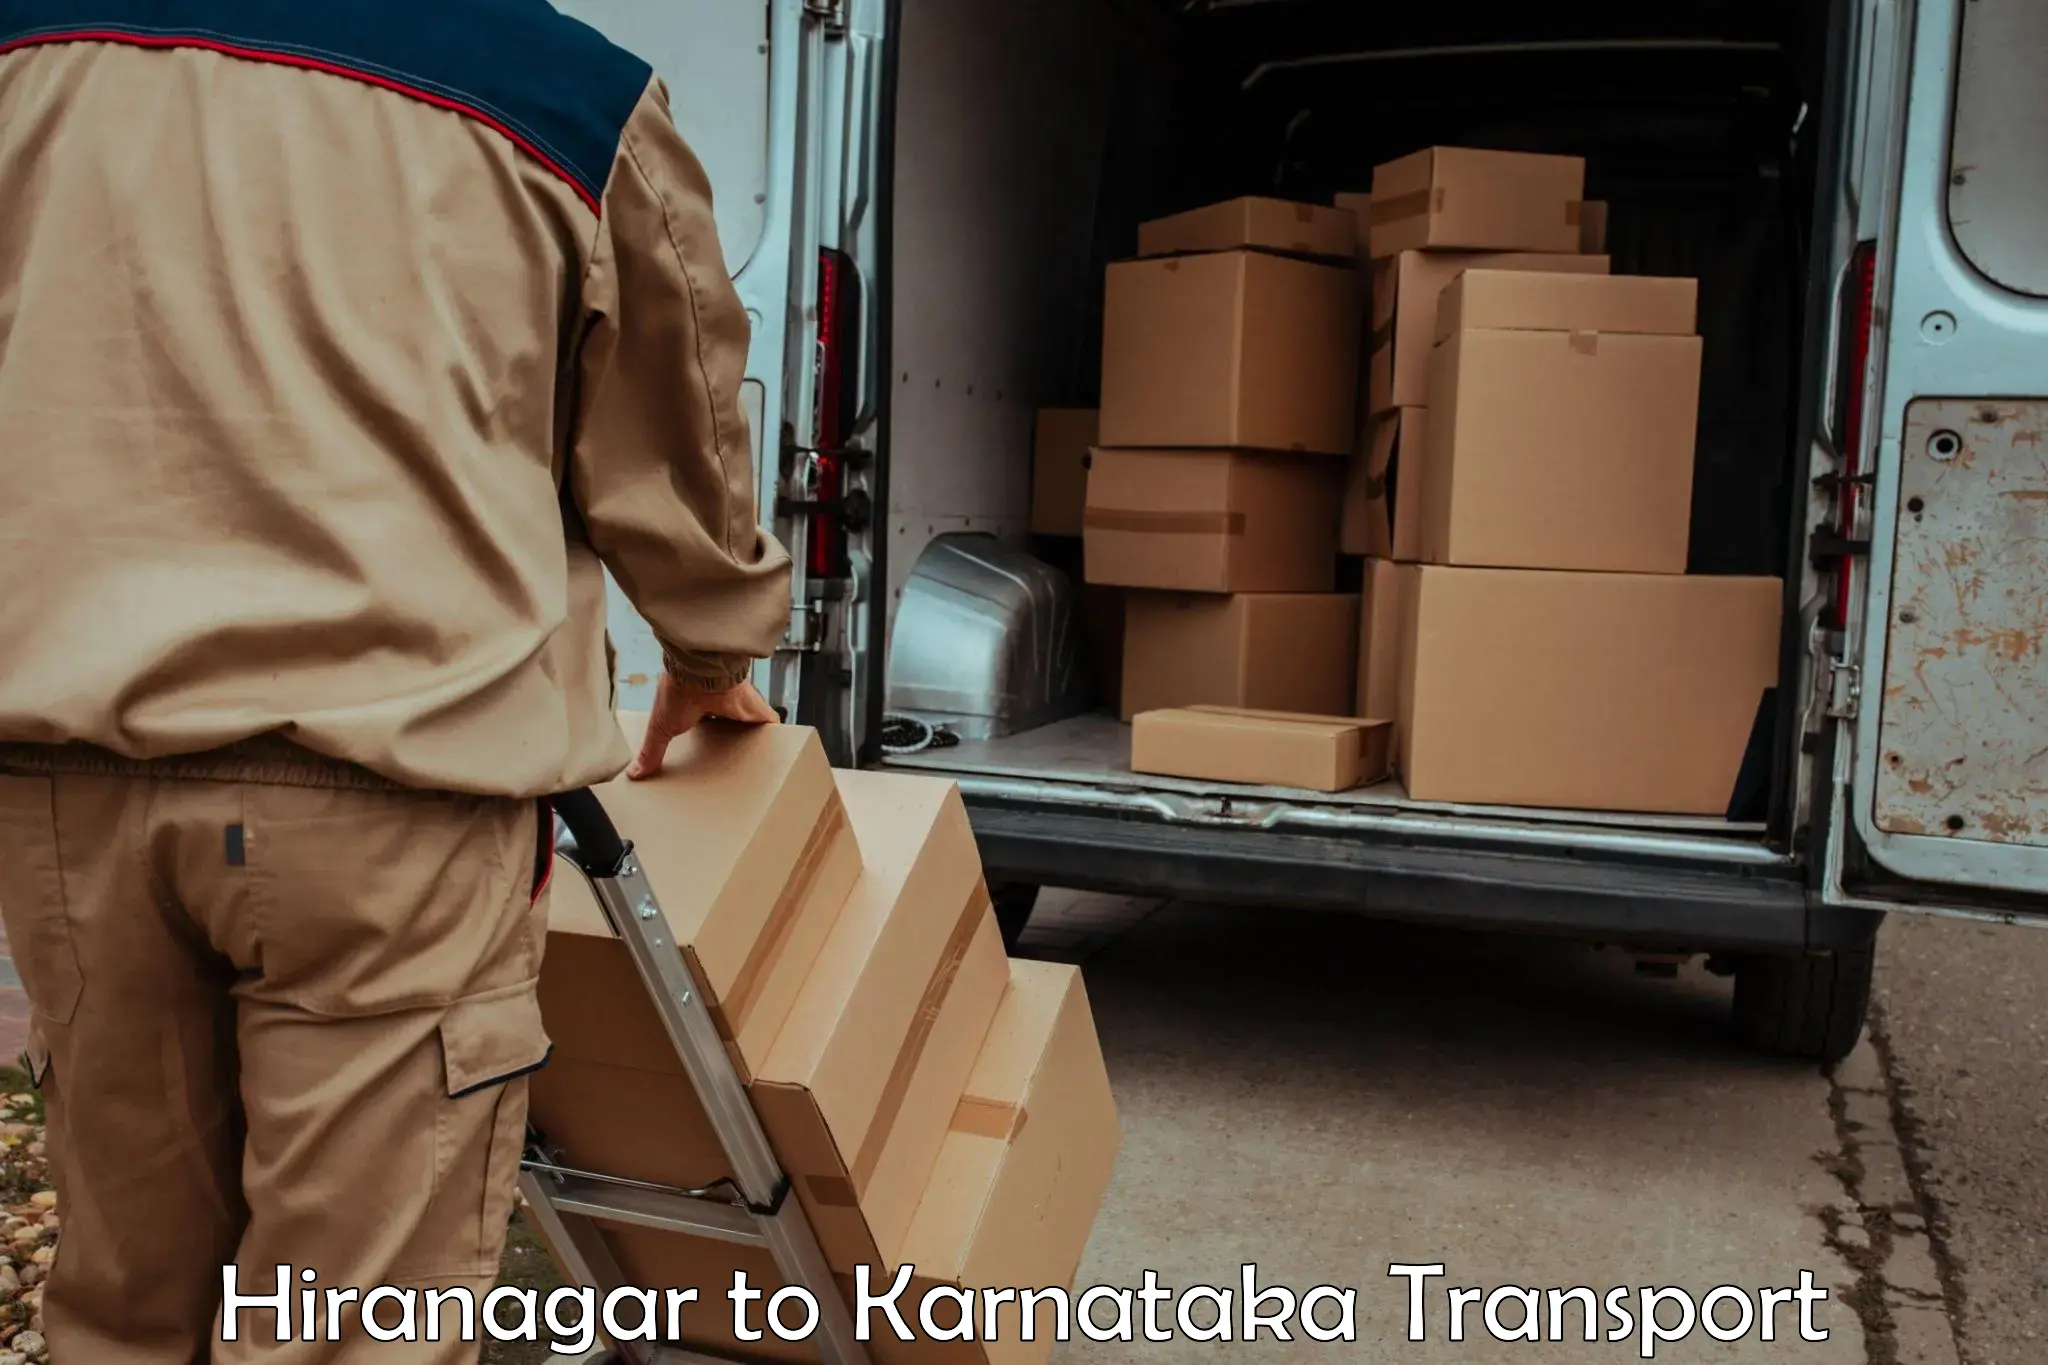 Parcel transport services Hiranagar to Doddaballapura